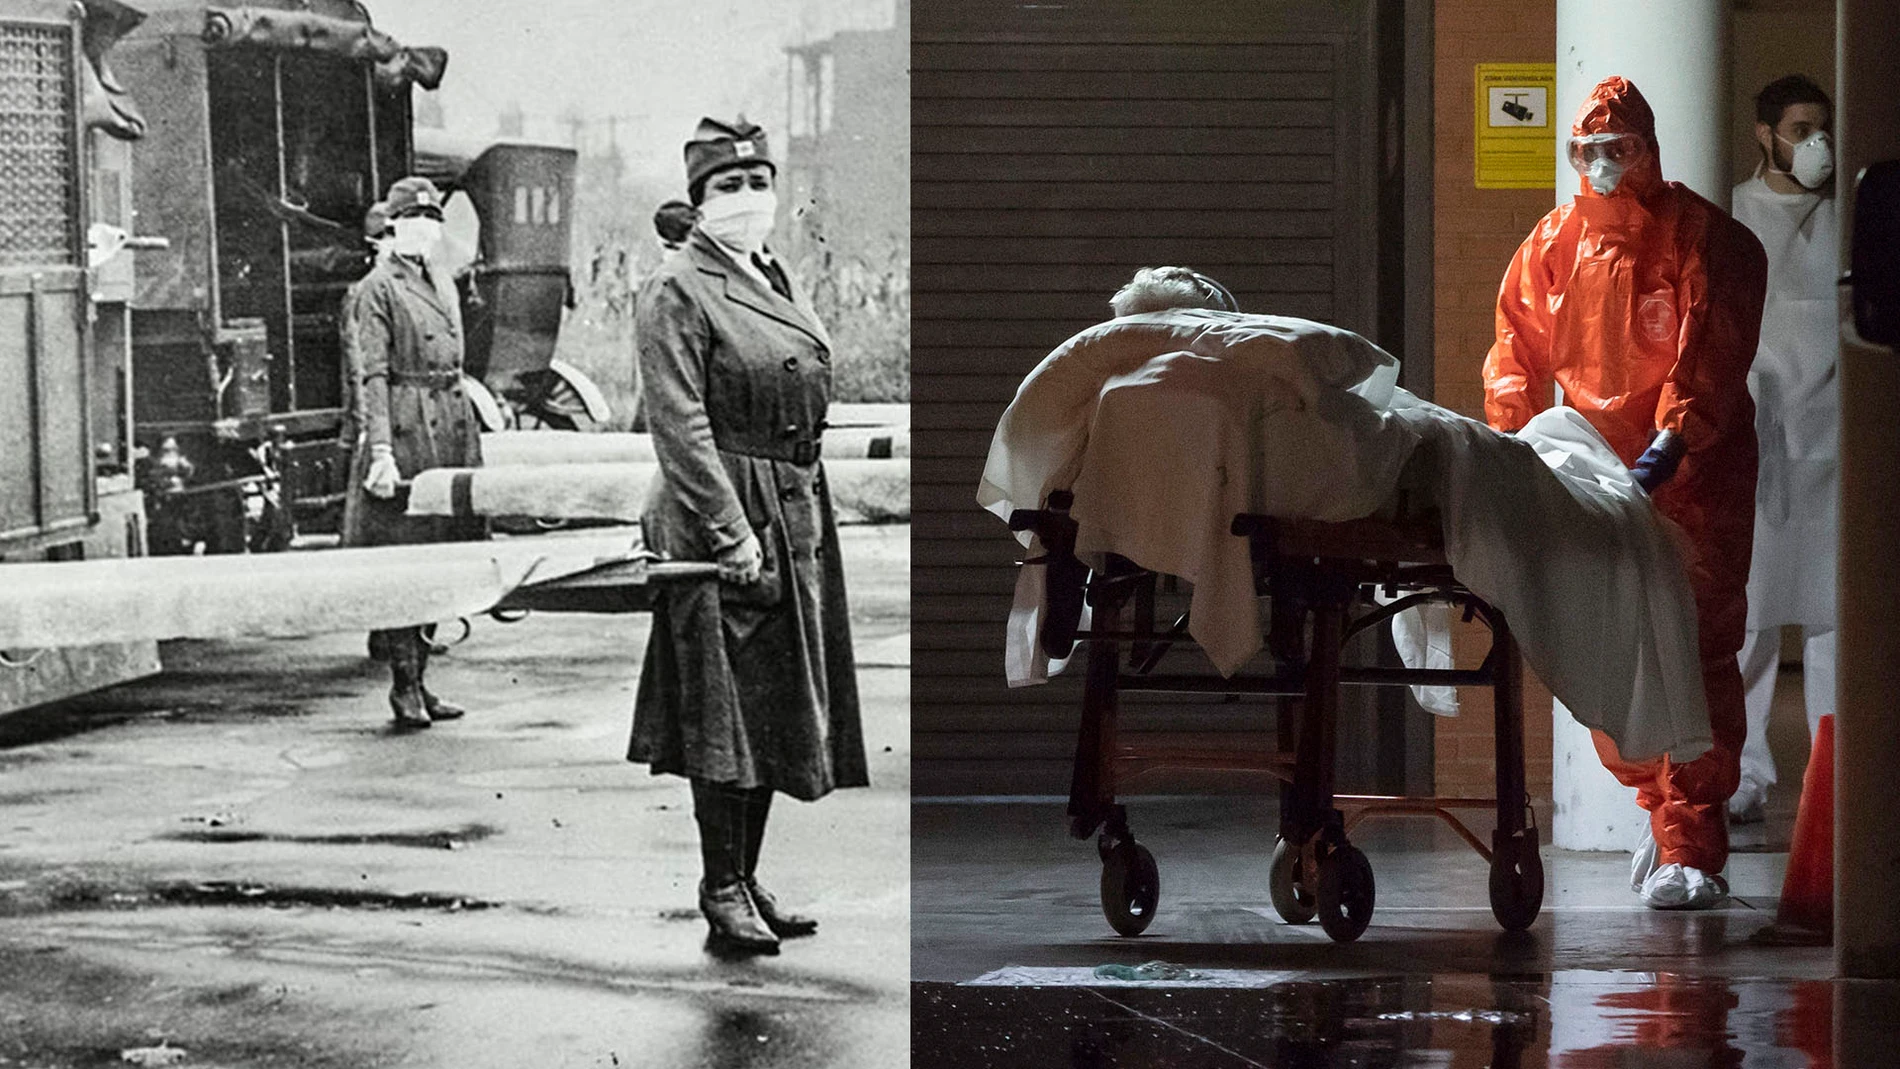 Imágenes de dos pandemias: enfermeras de la Cruz Roja en Washington durante la gripe española y un enfermero del servicio de salud murciano traslada un enfermo de Covid-19.